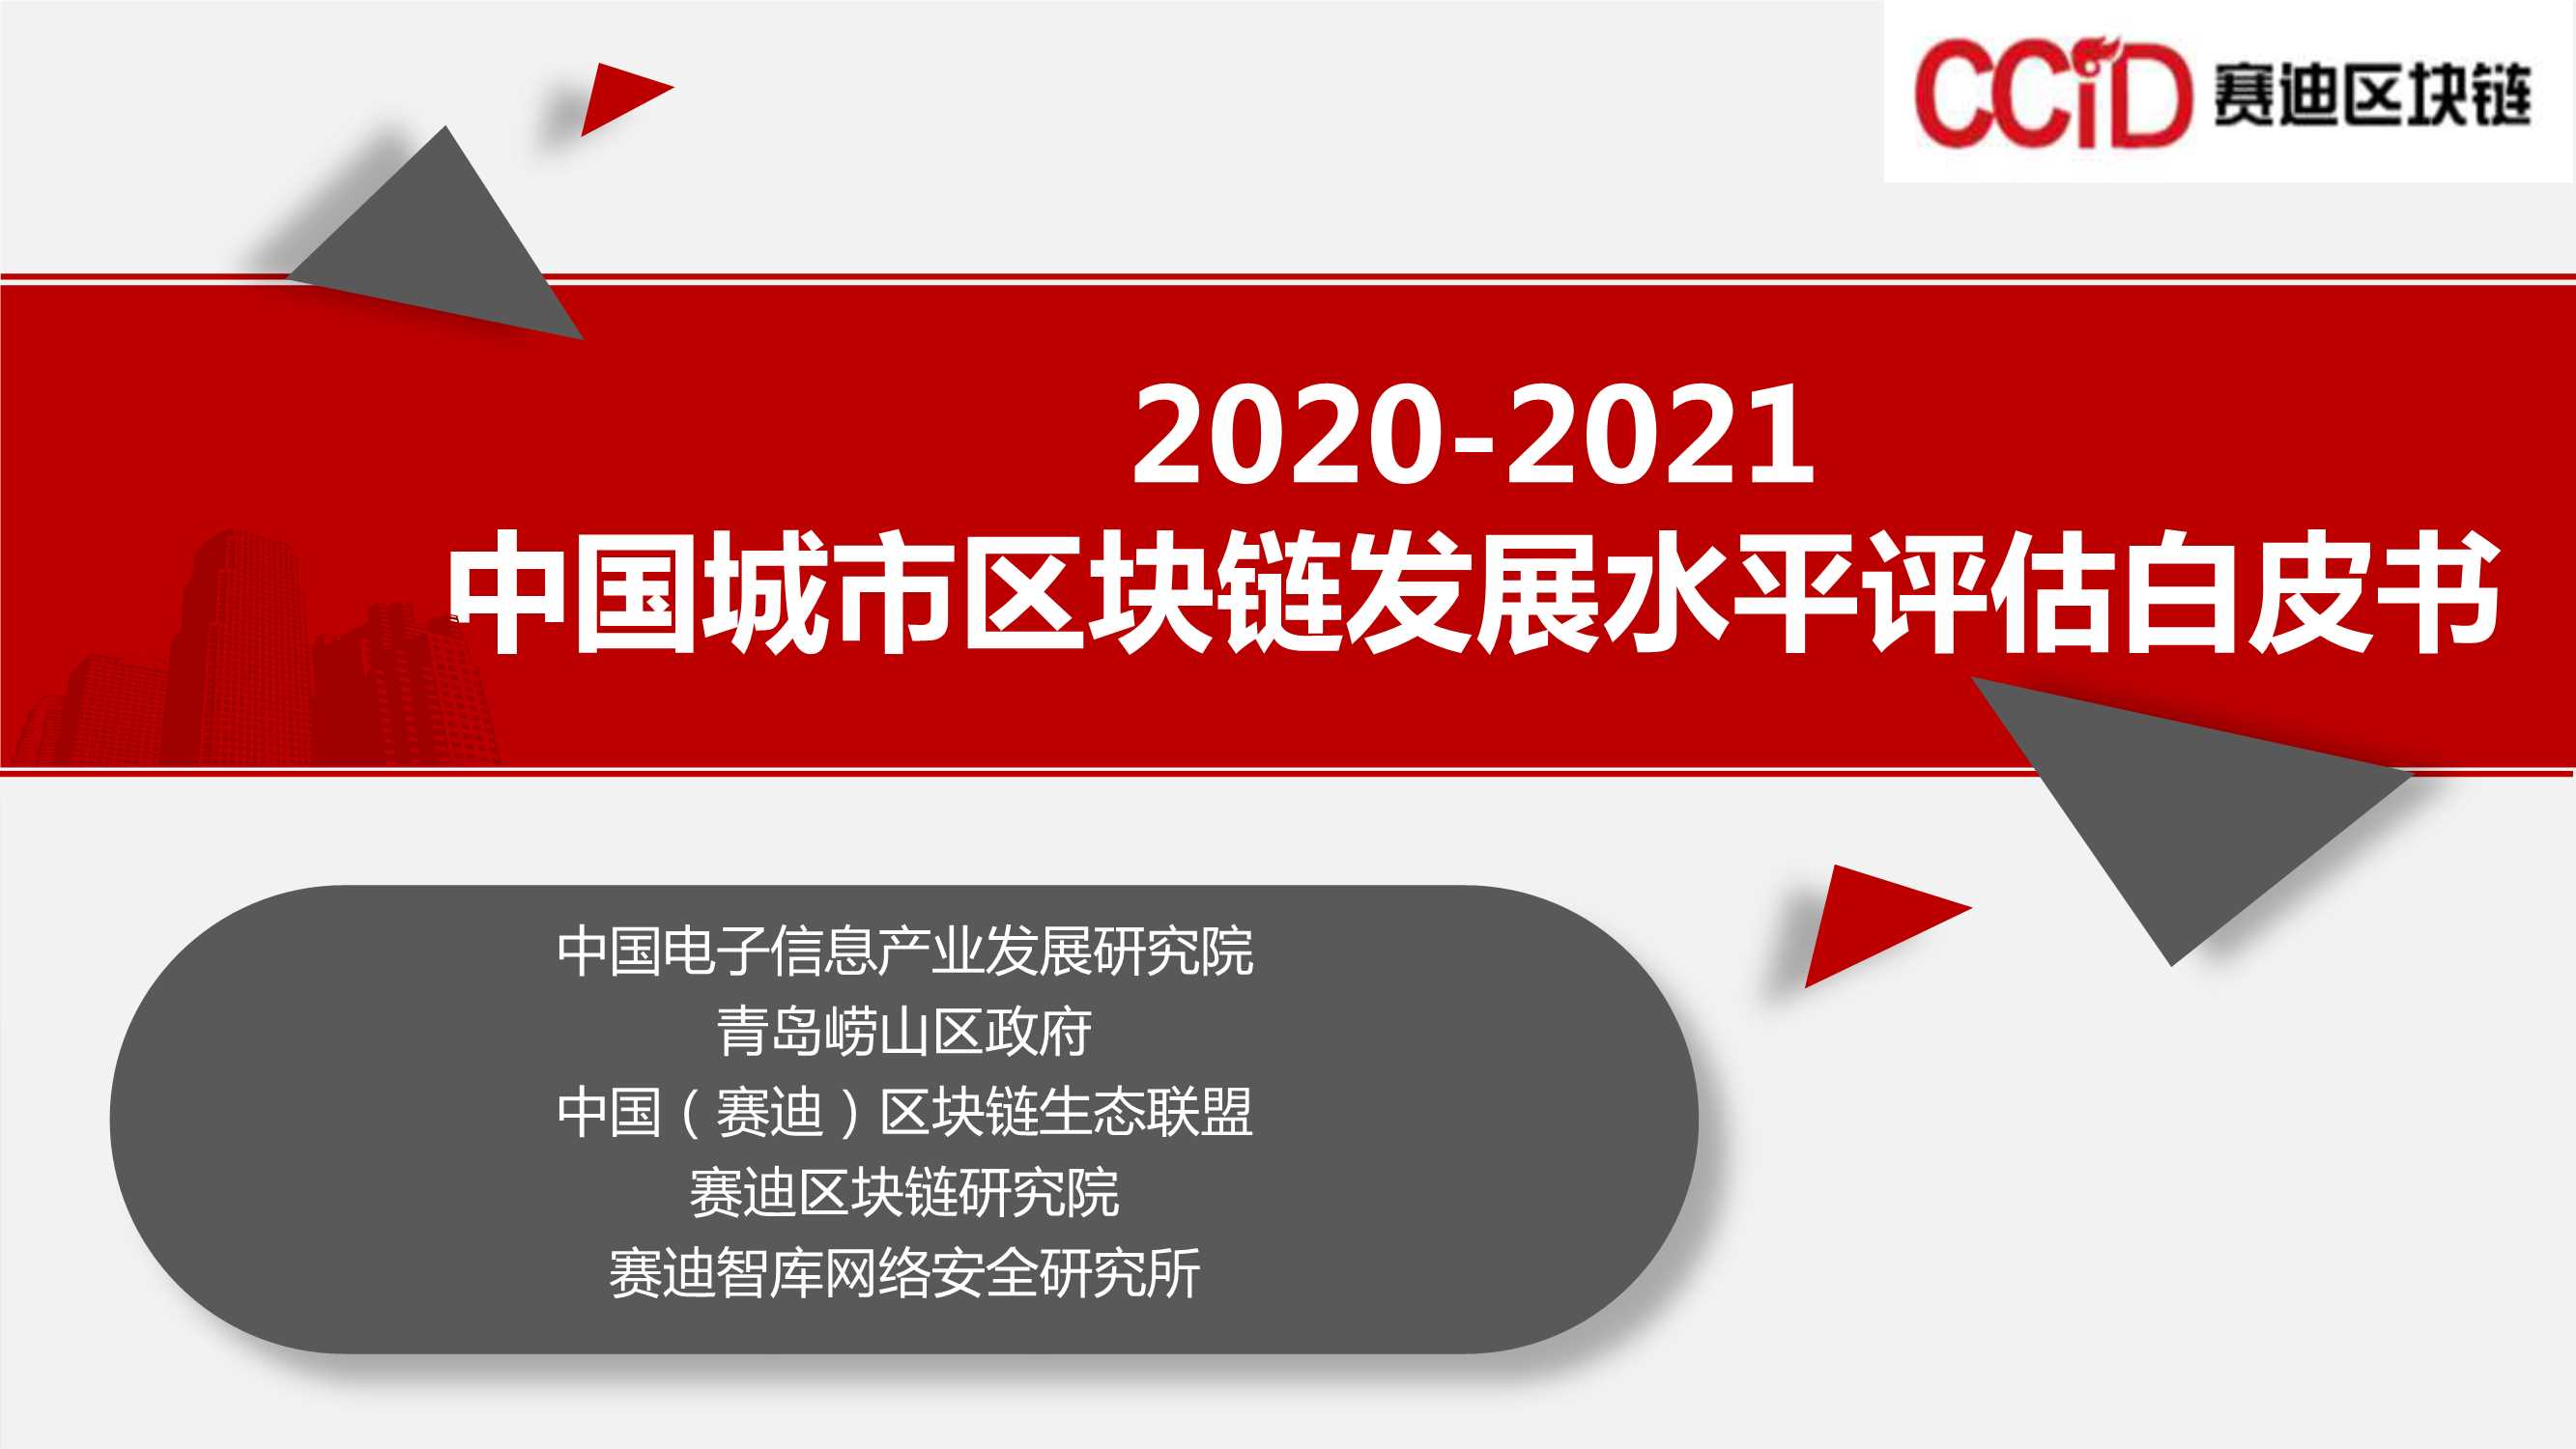 赛迪-2020-2021中国城市区块链发展水平评估白皮书-2021.11-18页